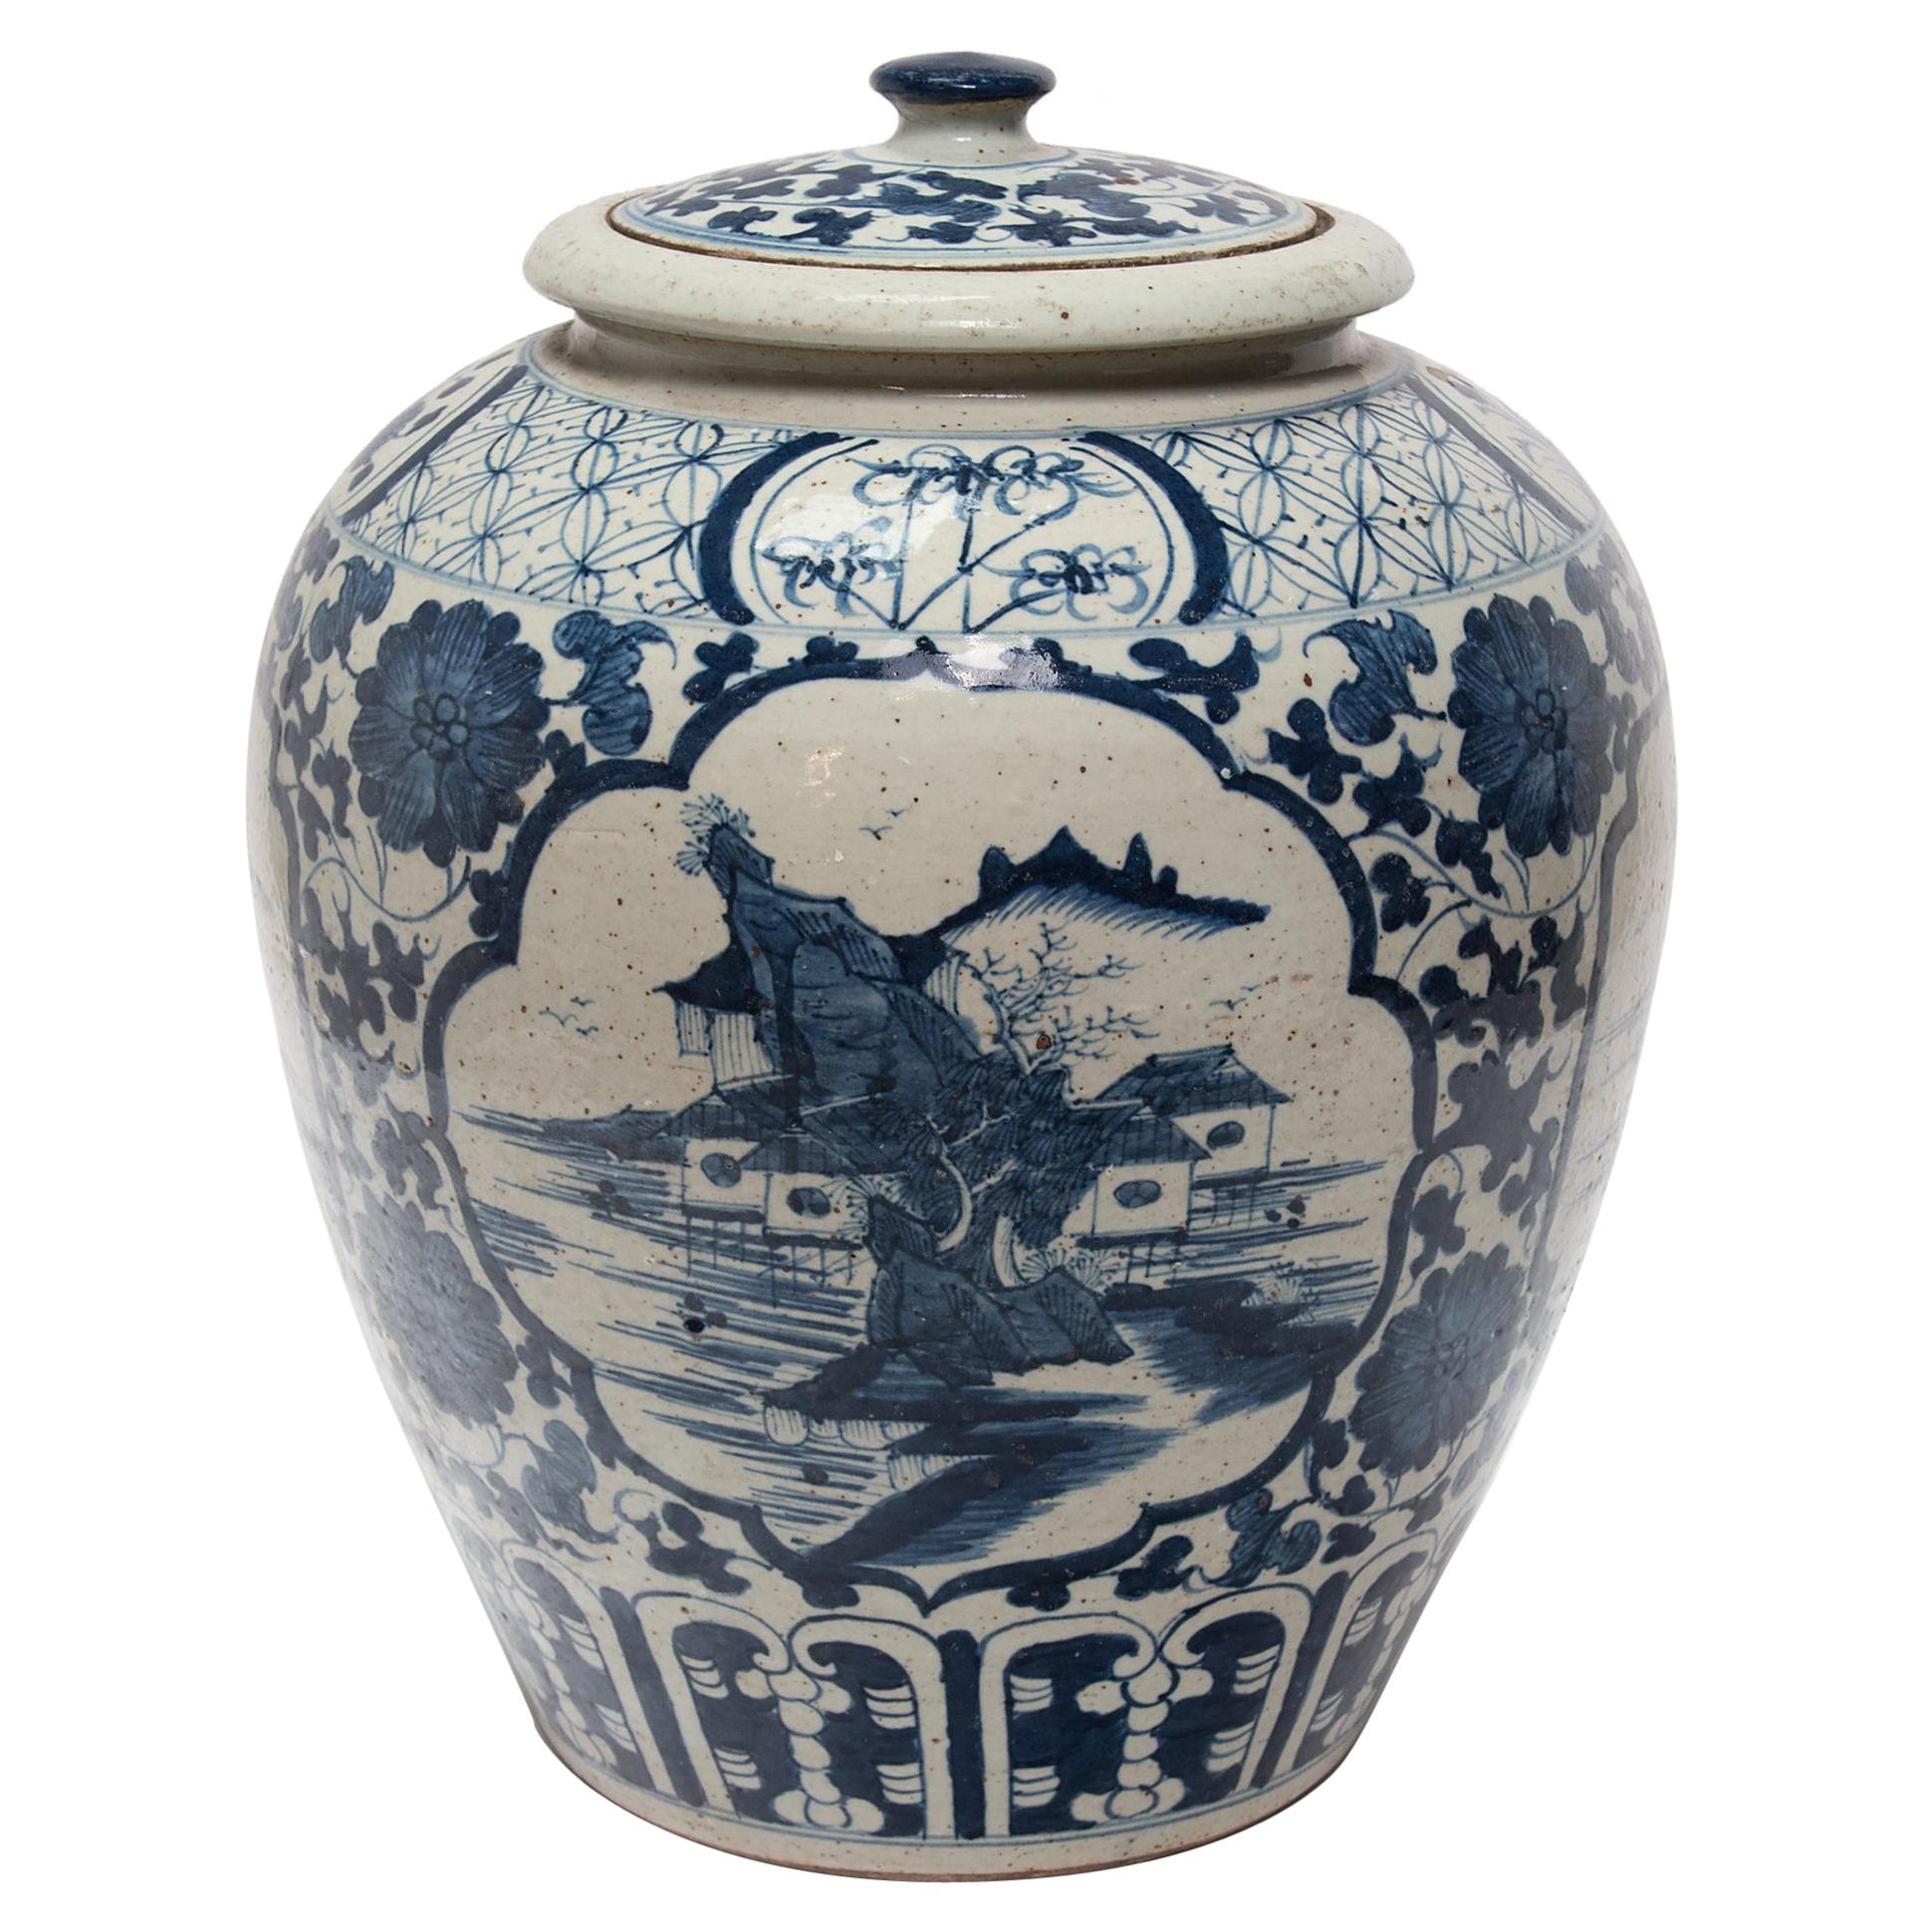 Grand pot à feuilles de thé bleu et blanc avec paysage de montagne